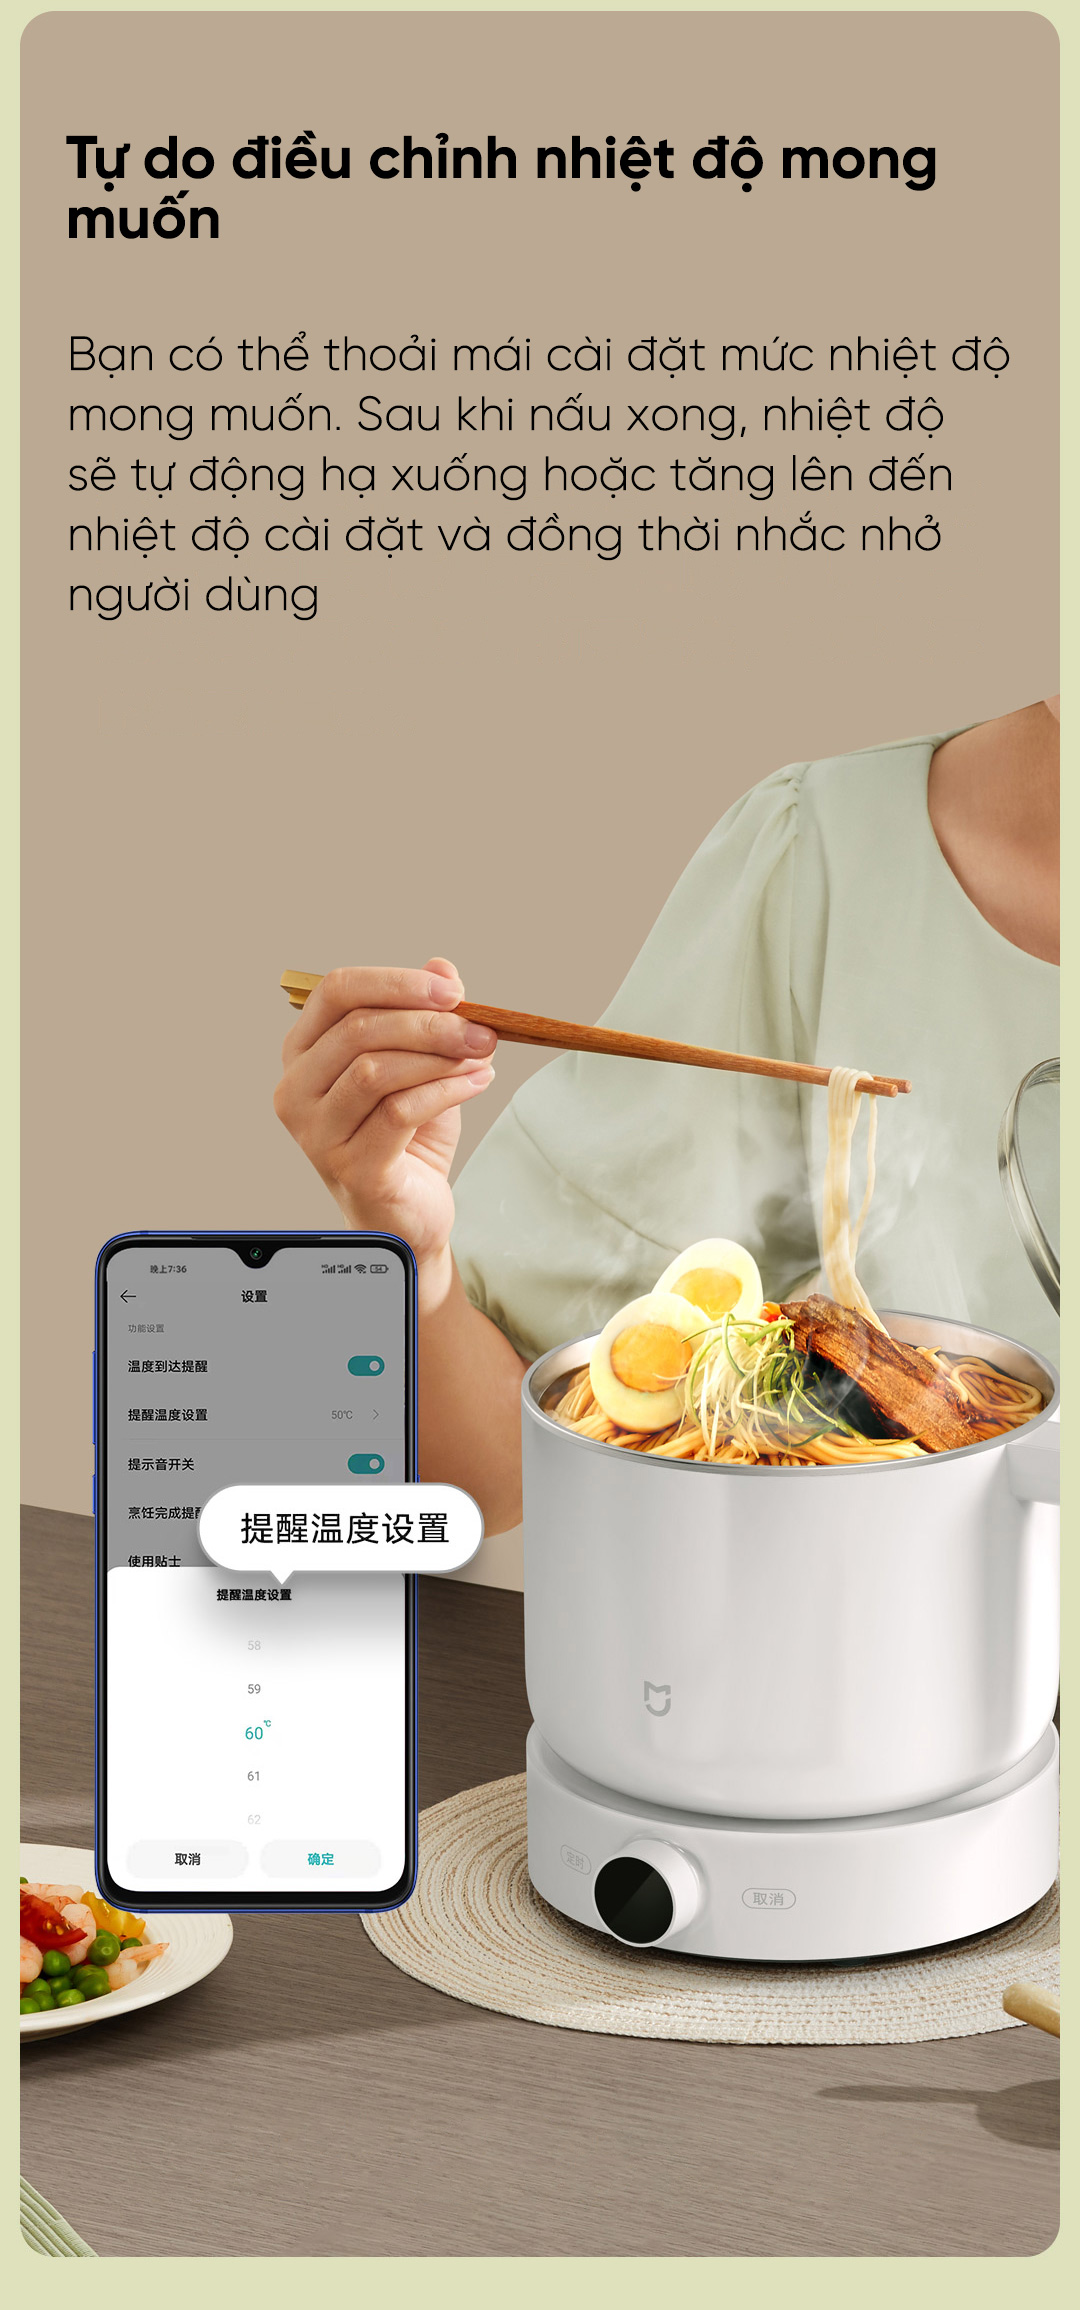 shop nào bán bộ nồi lẩu hấp siêu tốc điện thông minh Xiaomi Mijia MDZG01 1.5L ở Hải Phòng